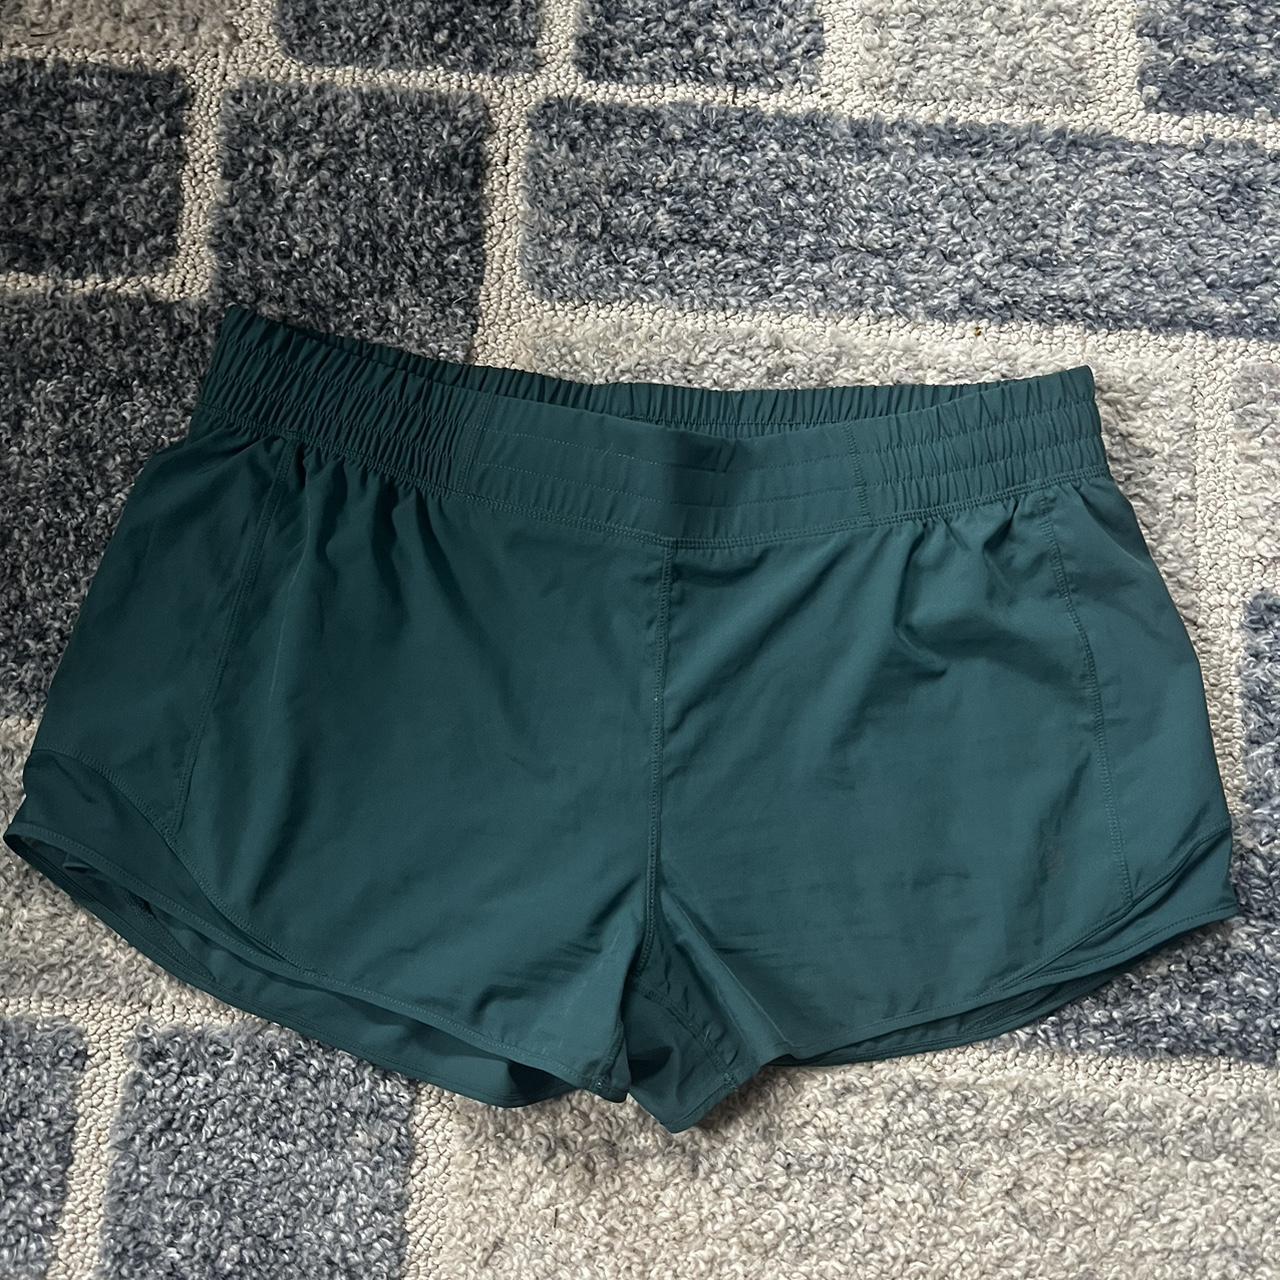 MPG Green/Blue Workout shorts size XXL! Slight wear... - Depop